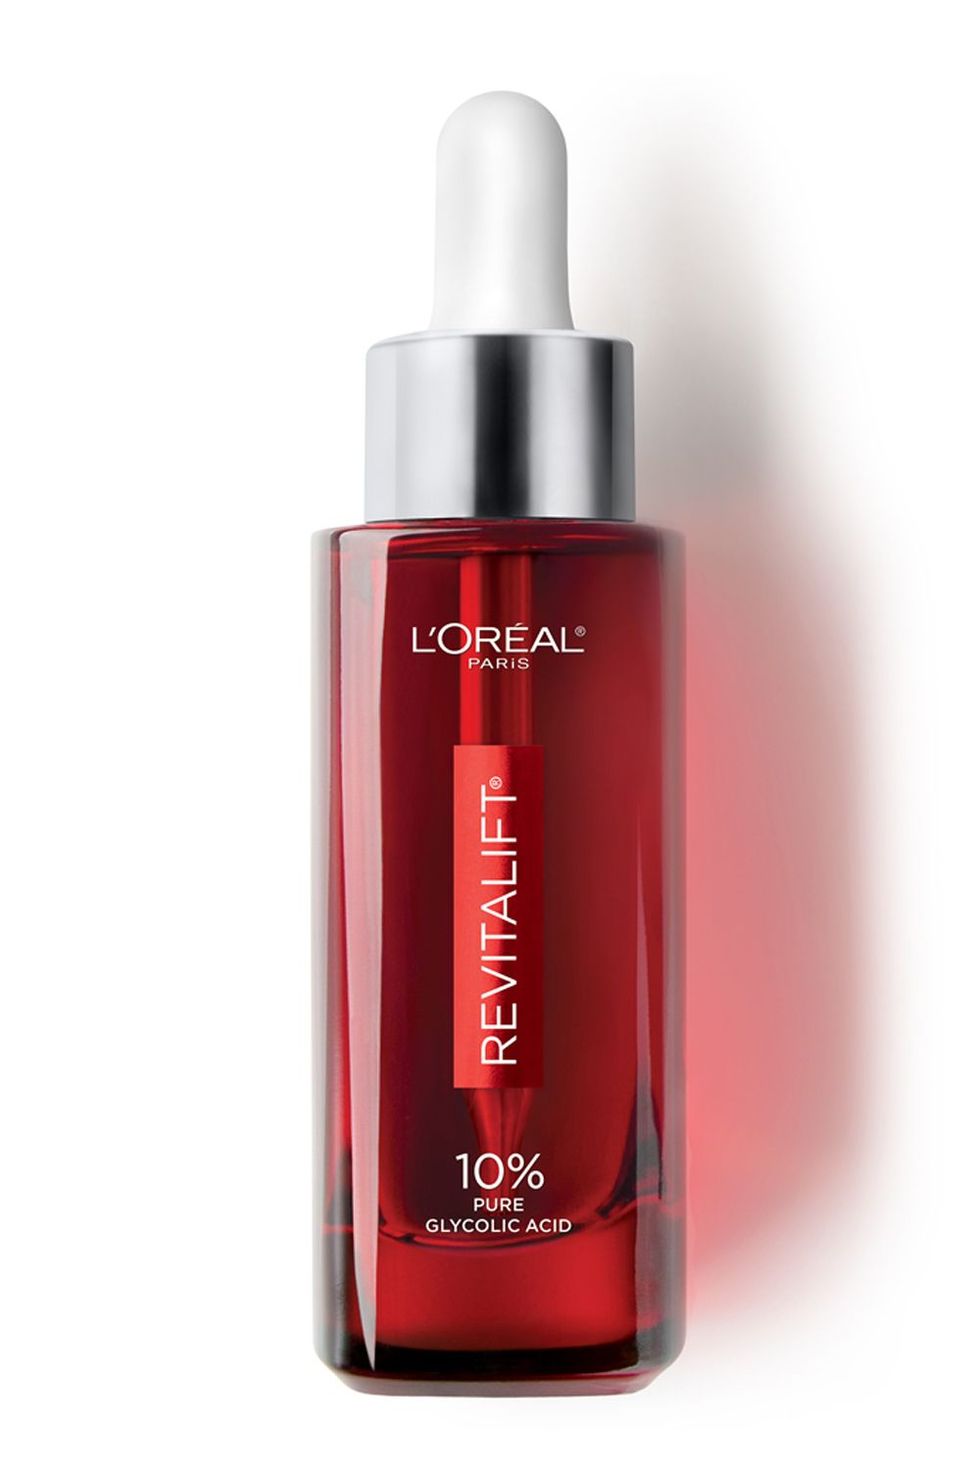 L'Oréal Paris Revitalift 10% Pure Glycolic Acid Serum